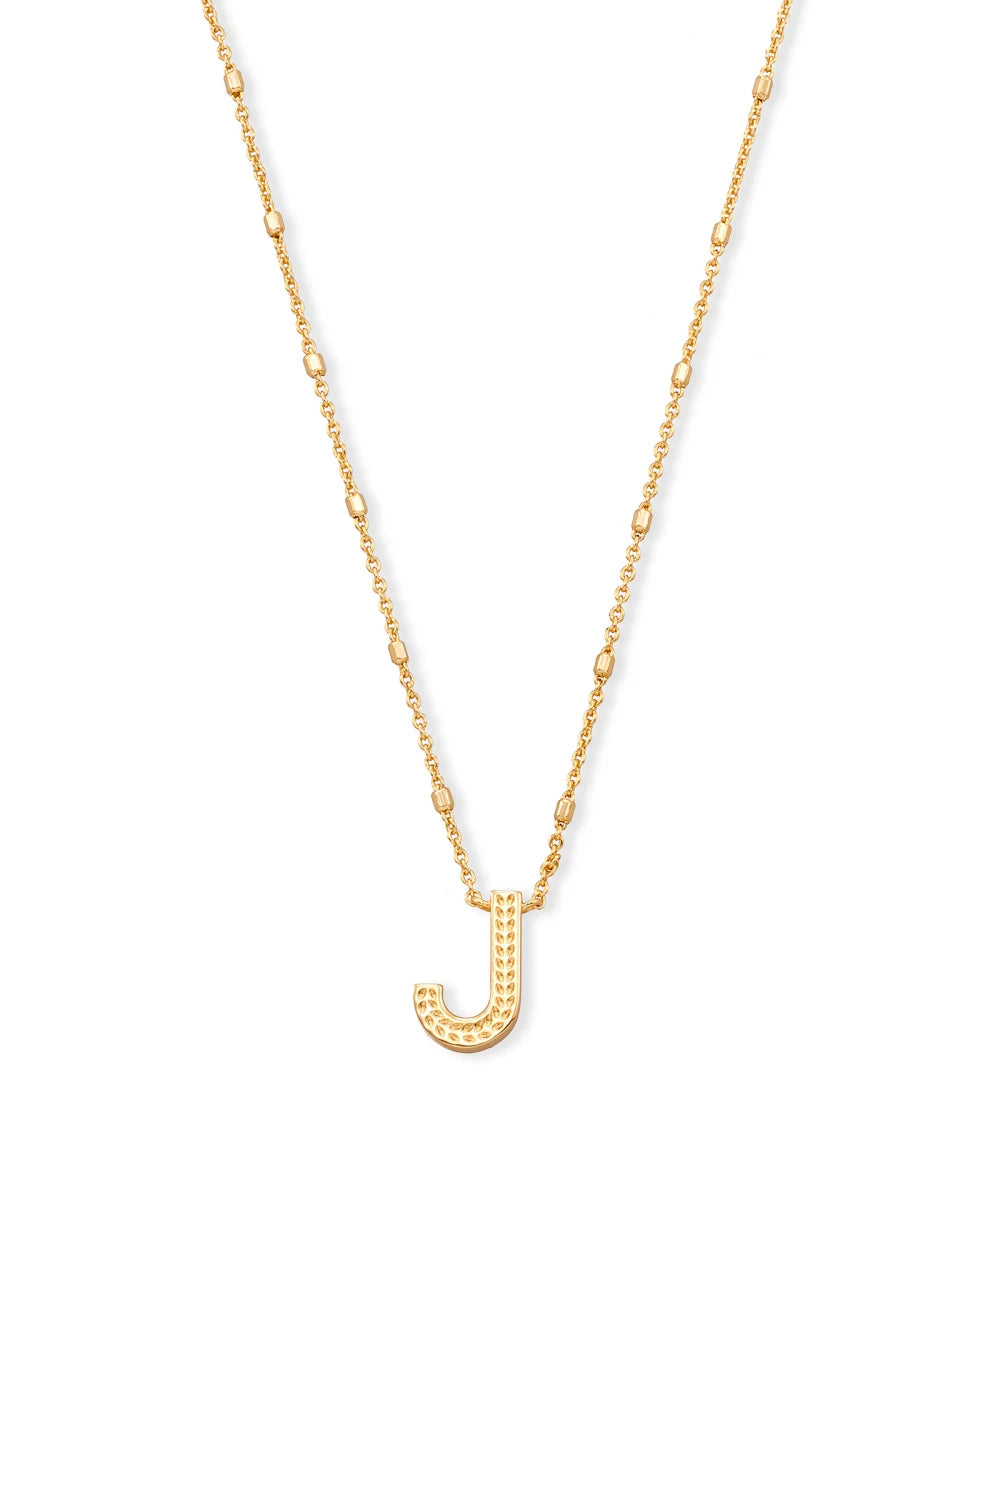 Kendra Scott: Letter J Pendant Necklace - Gold | Makk Fashions